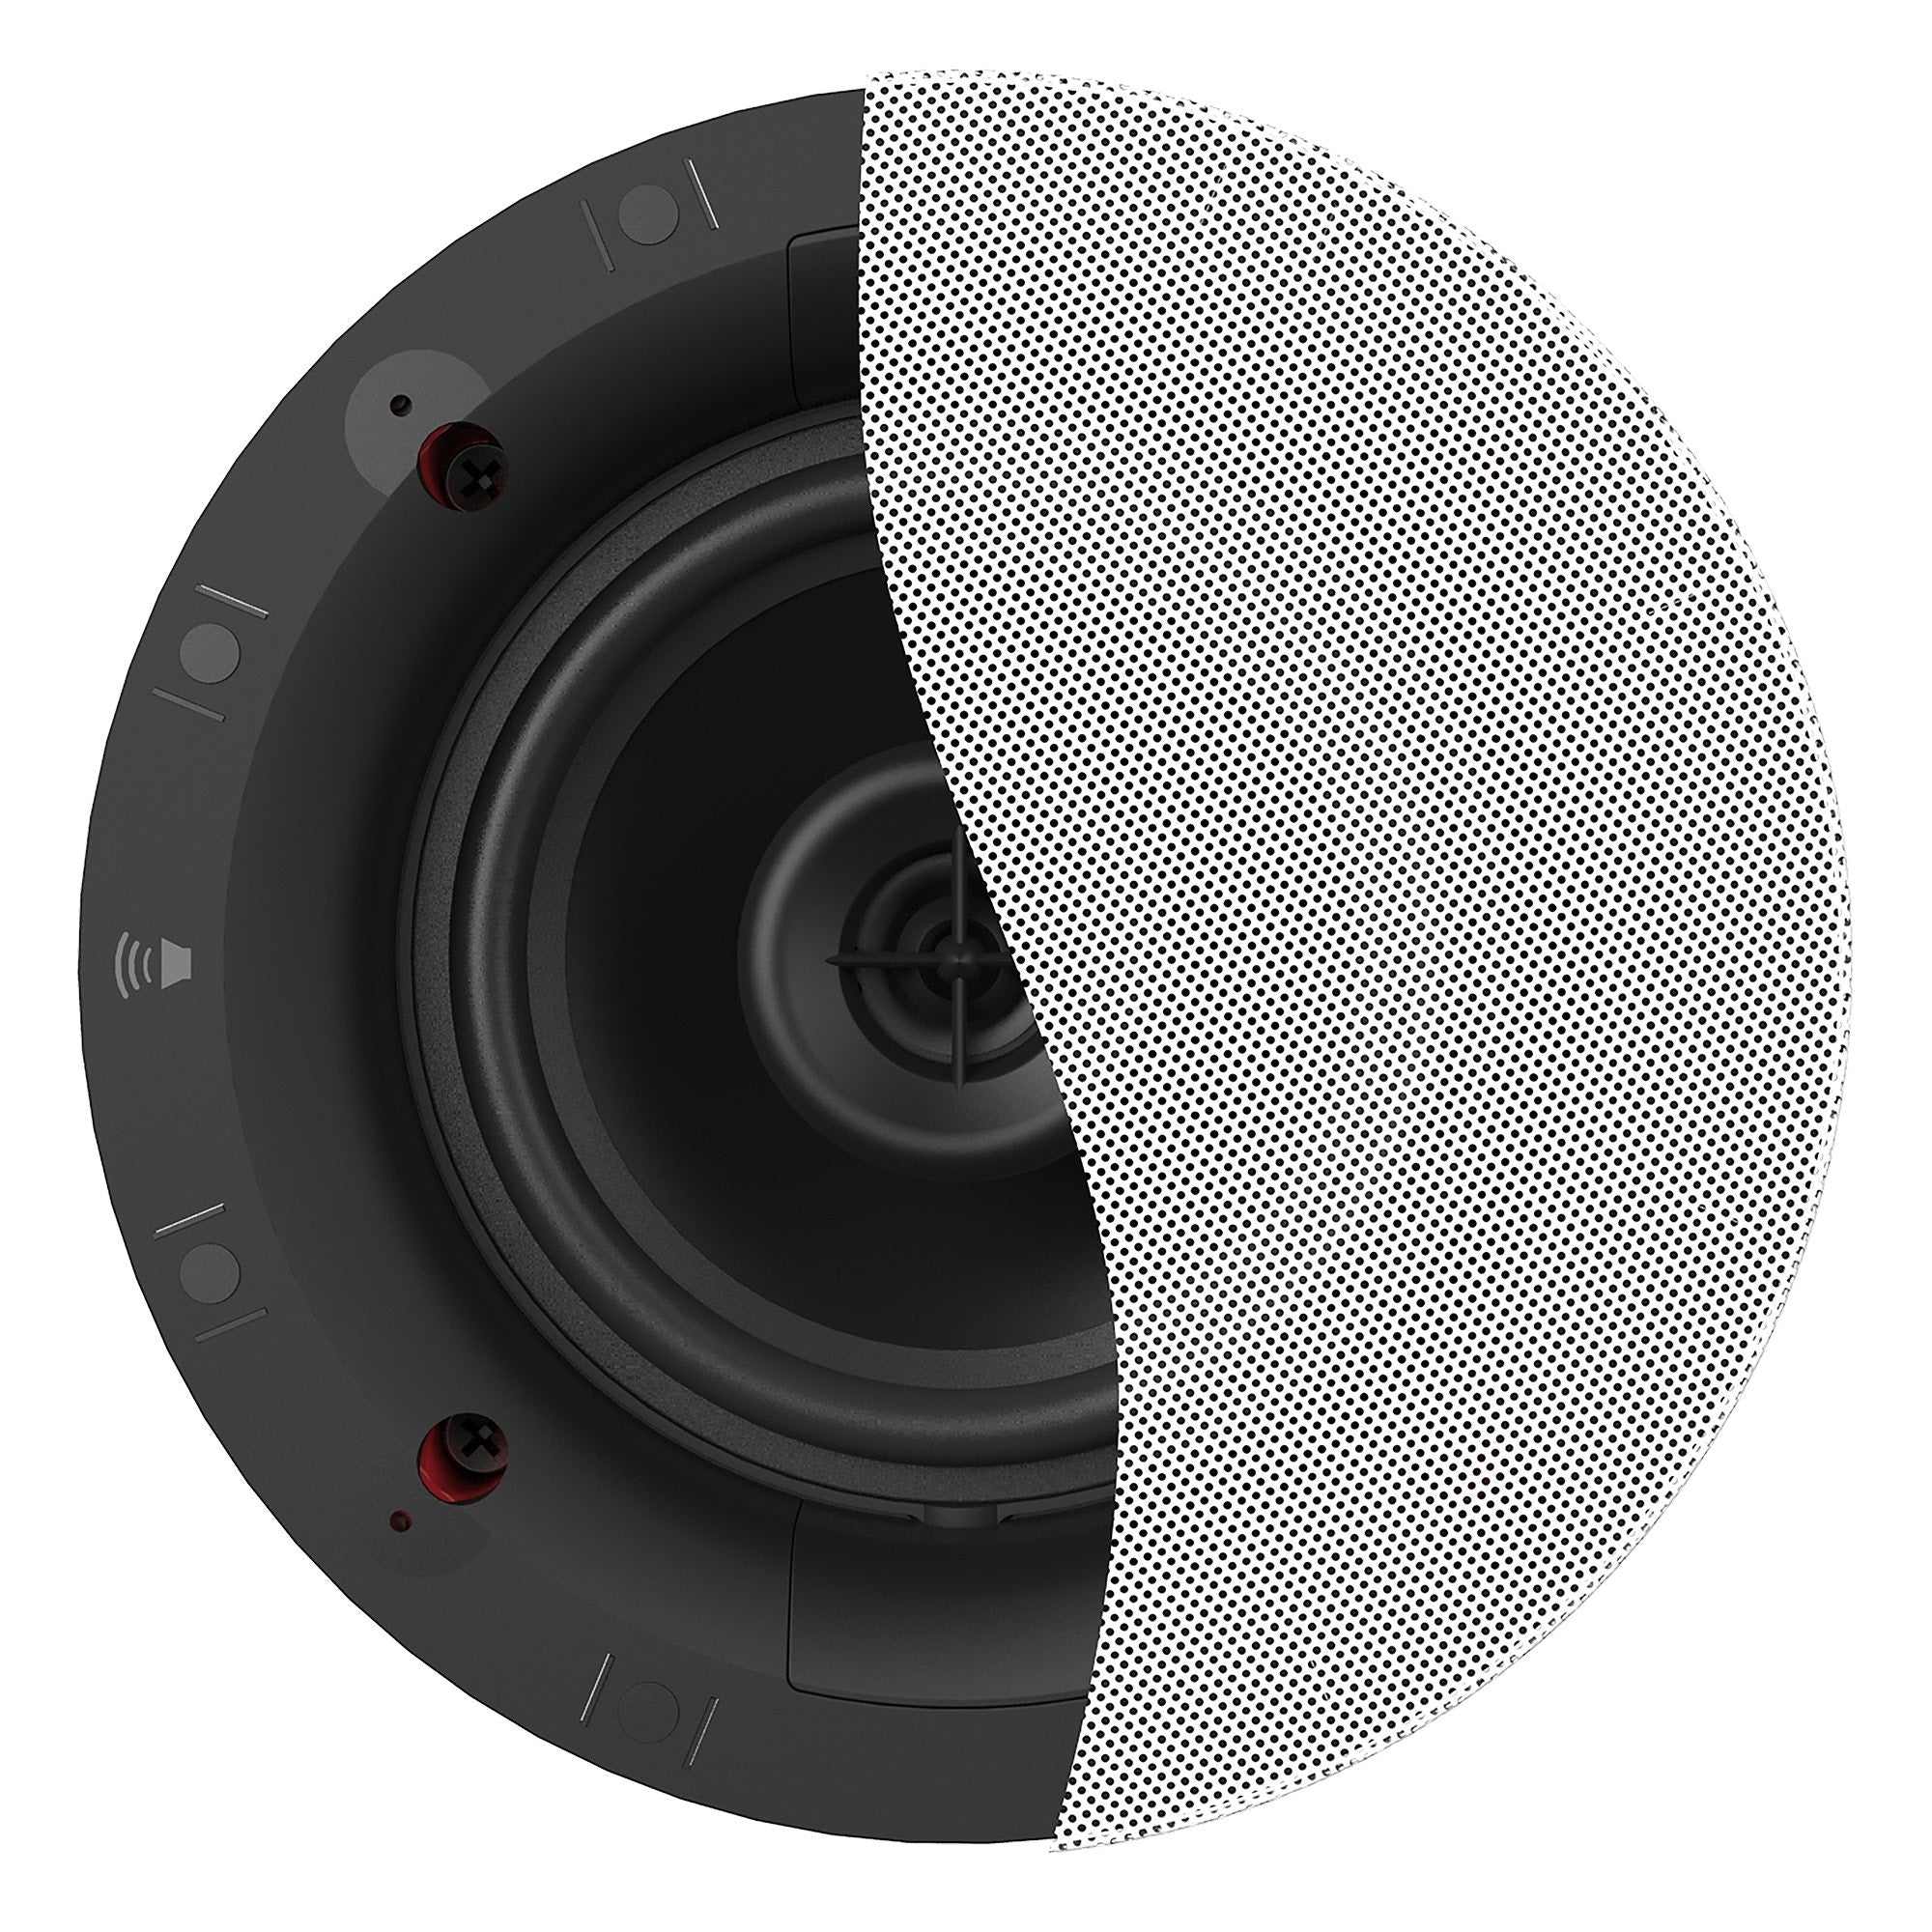 DS-160CDT 6.5" In-Ceiling Speaker (Single)